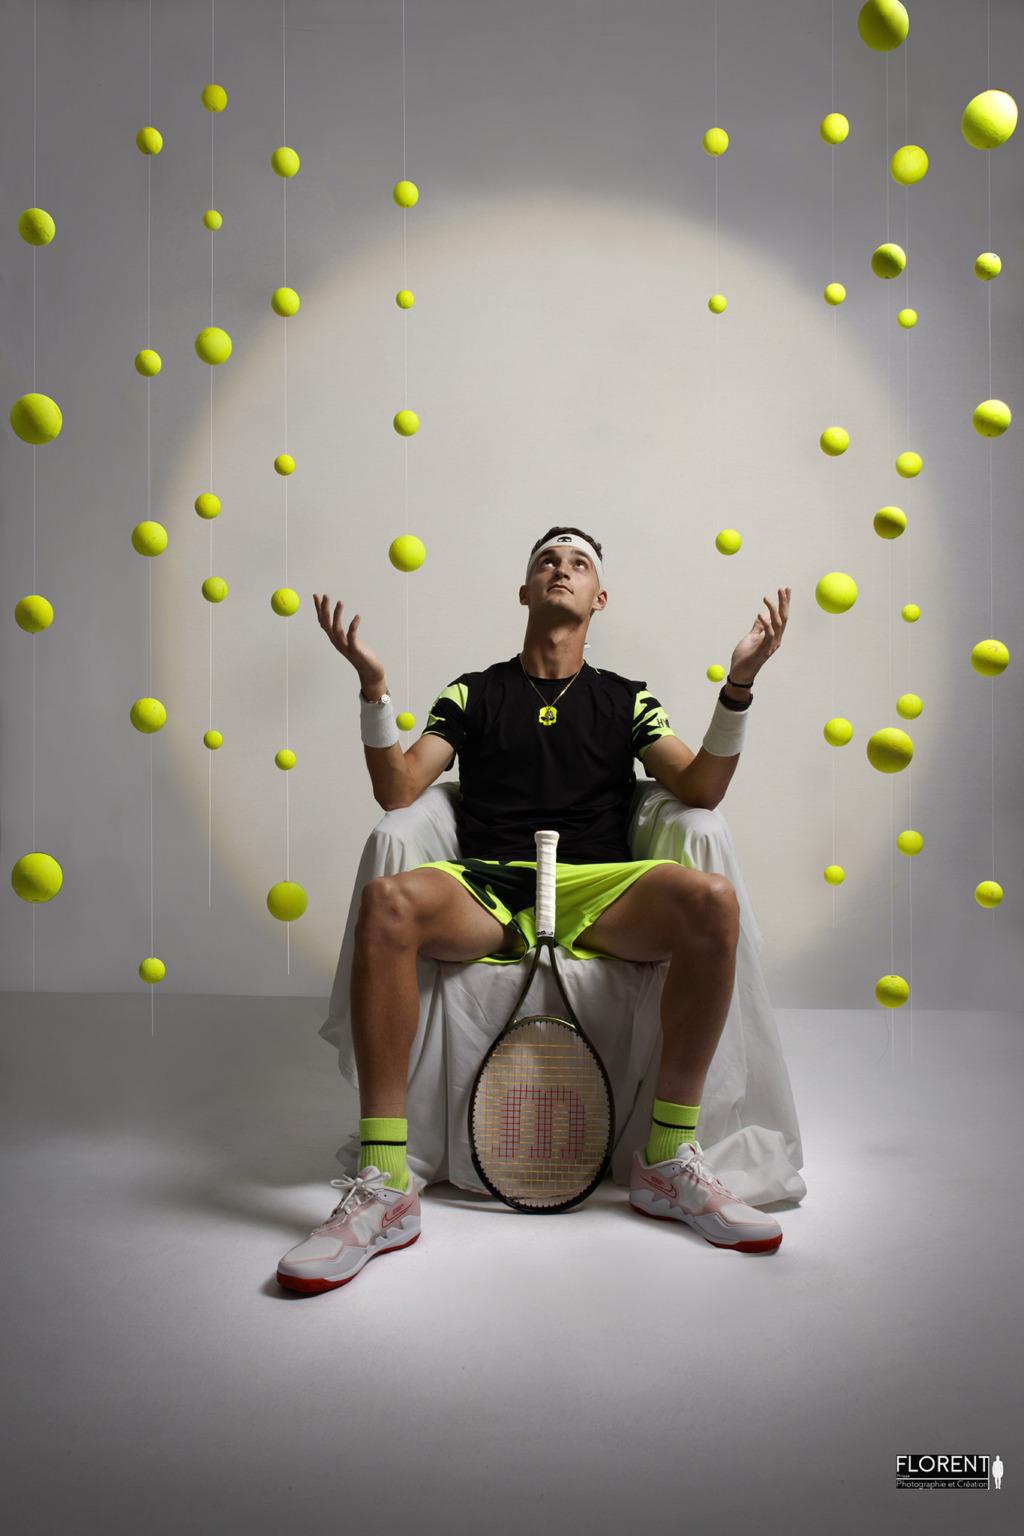 seance book joueur de tennis regarde les balles en suspension florent fanie photographe boulogne sur mer lille le touquet paris saint omer